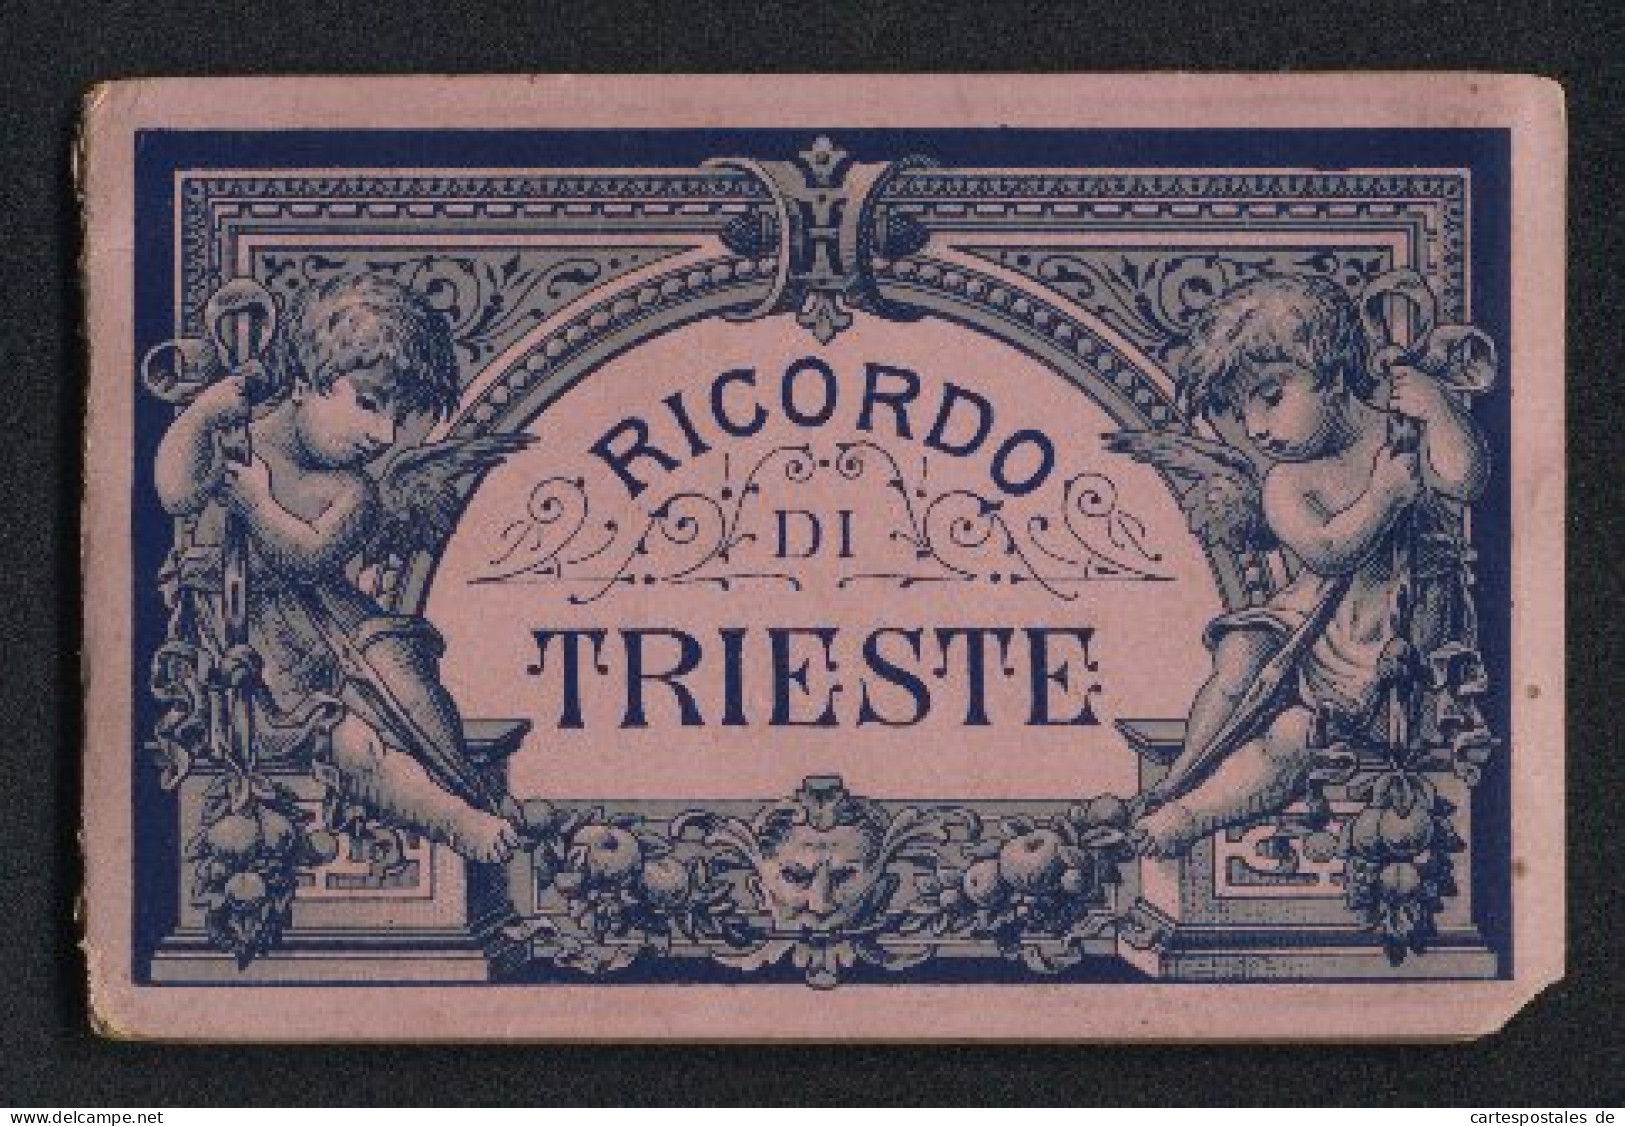 Leporello-Album Trieste Mit 12 Lithographie-Ansichten, Herpelje Bahnhof, Miramar, Municipalgebäude, Südbahnhof, Bör  - Litografía